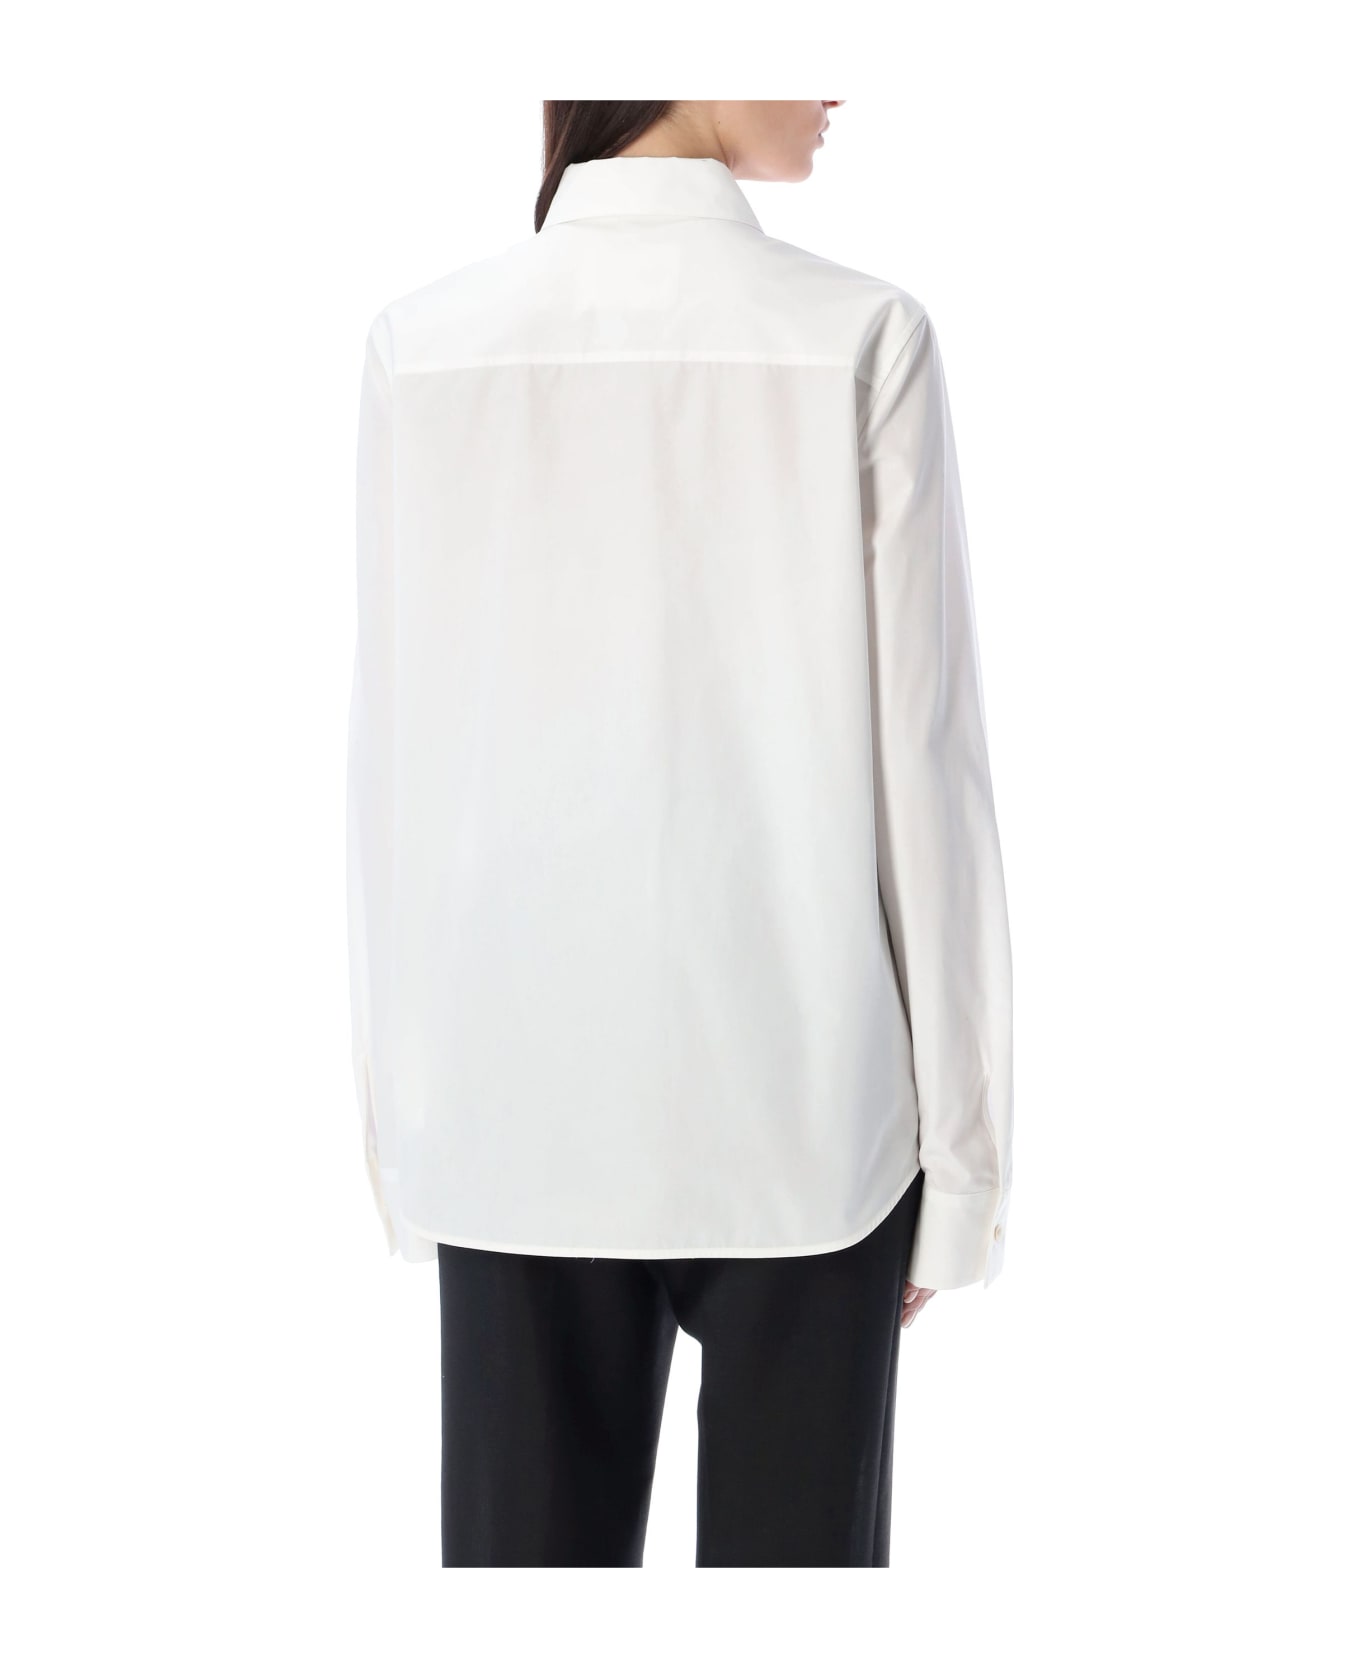 Jil Sander Cotton Poplin Shirt - White シャツ